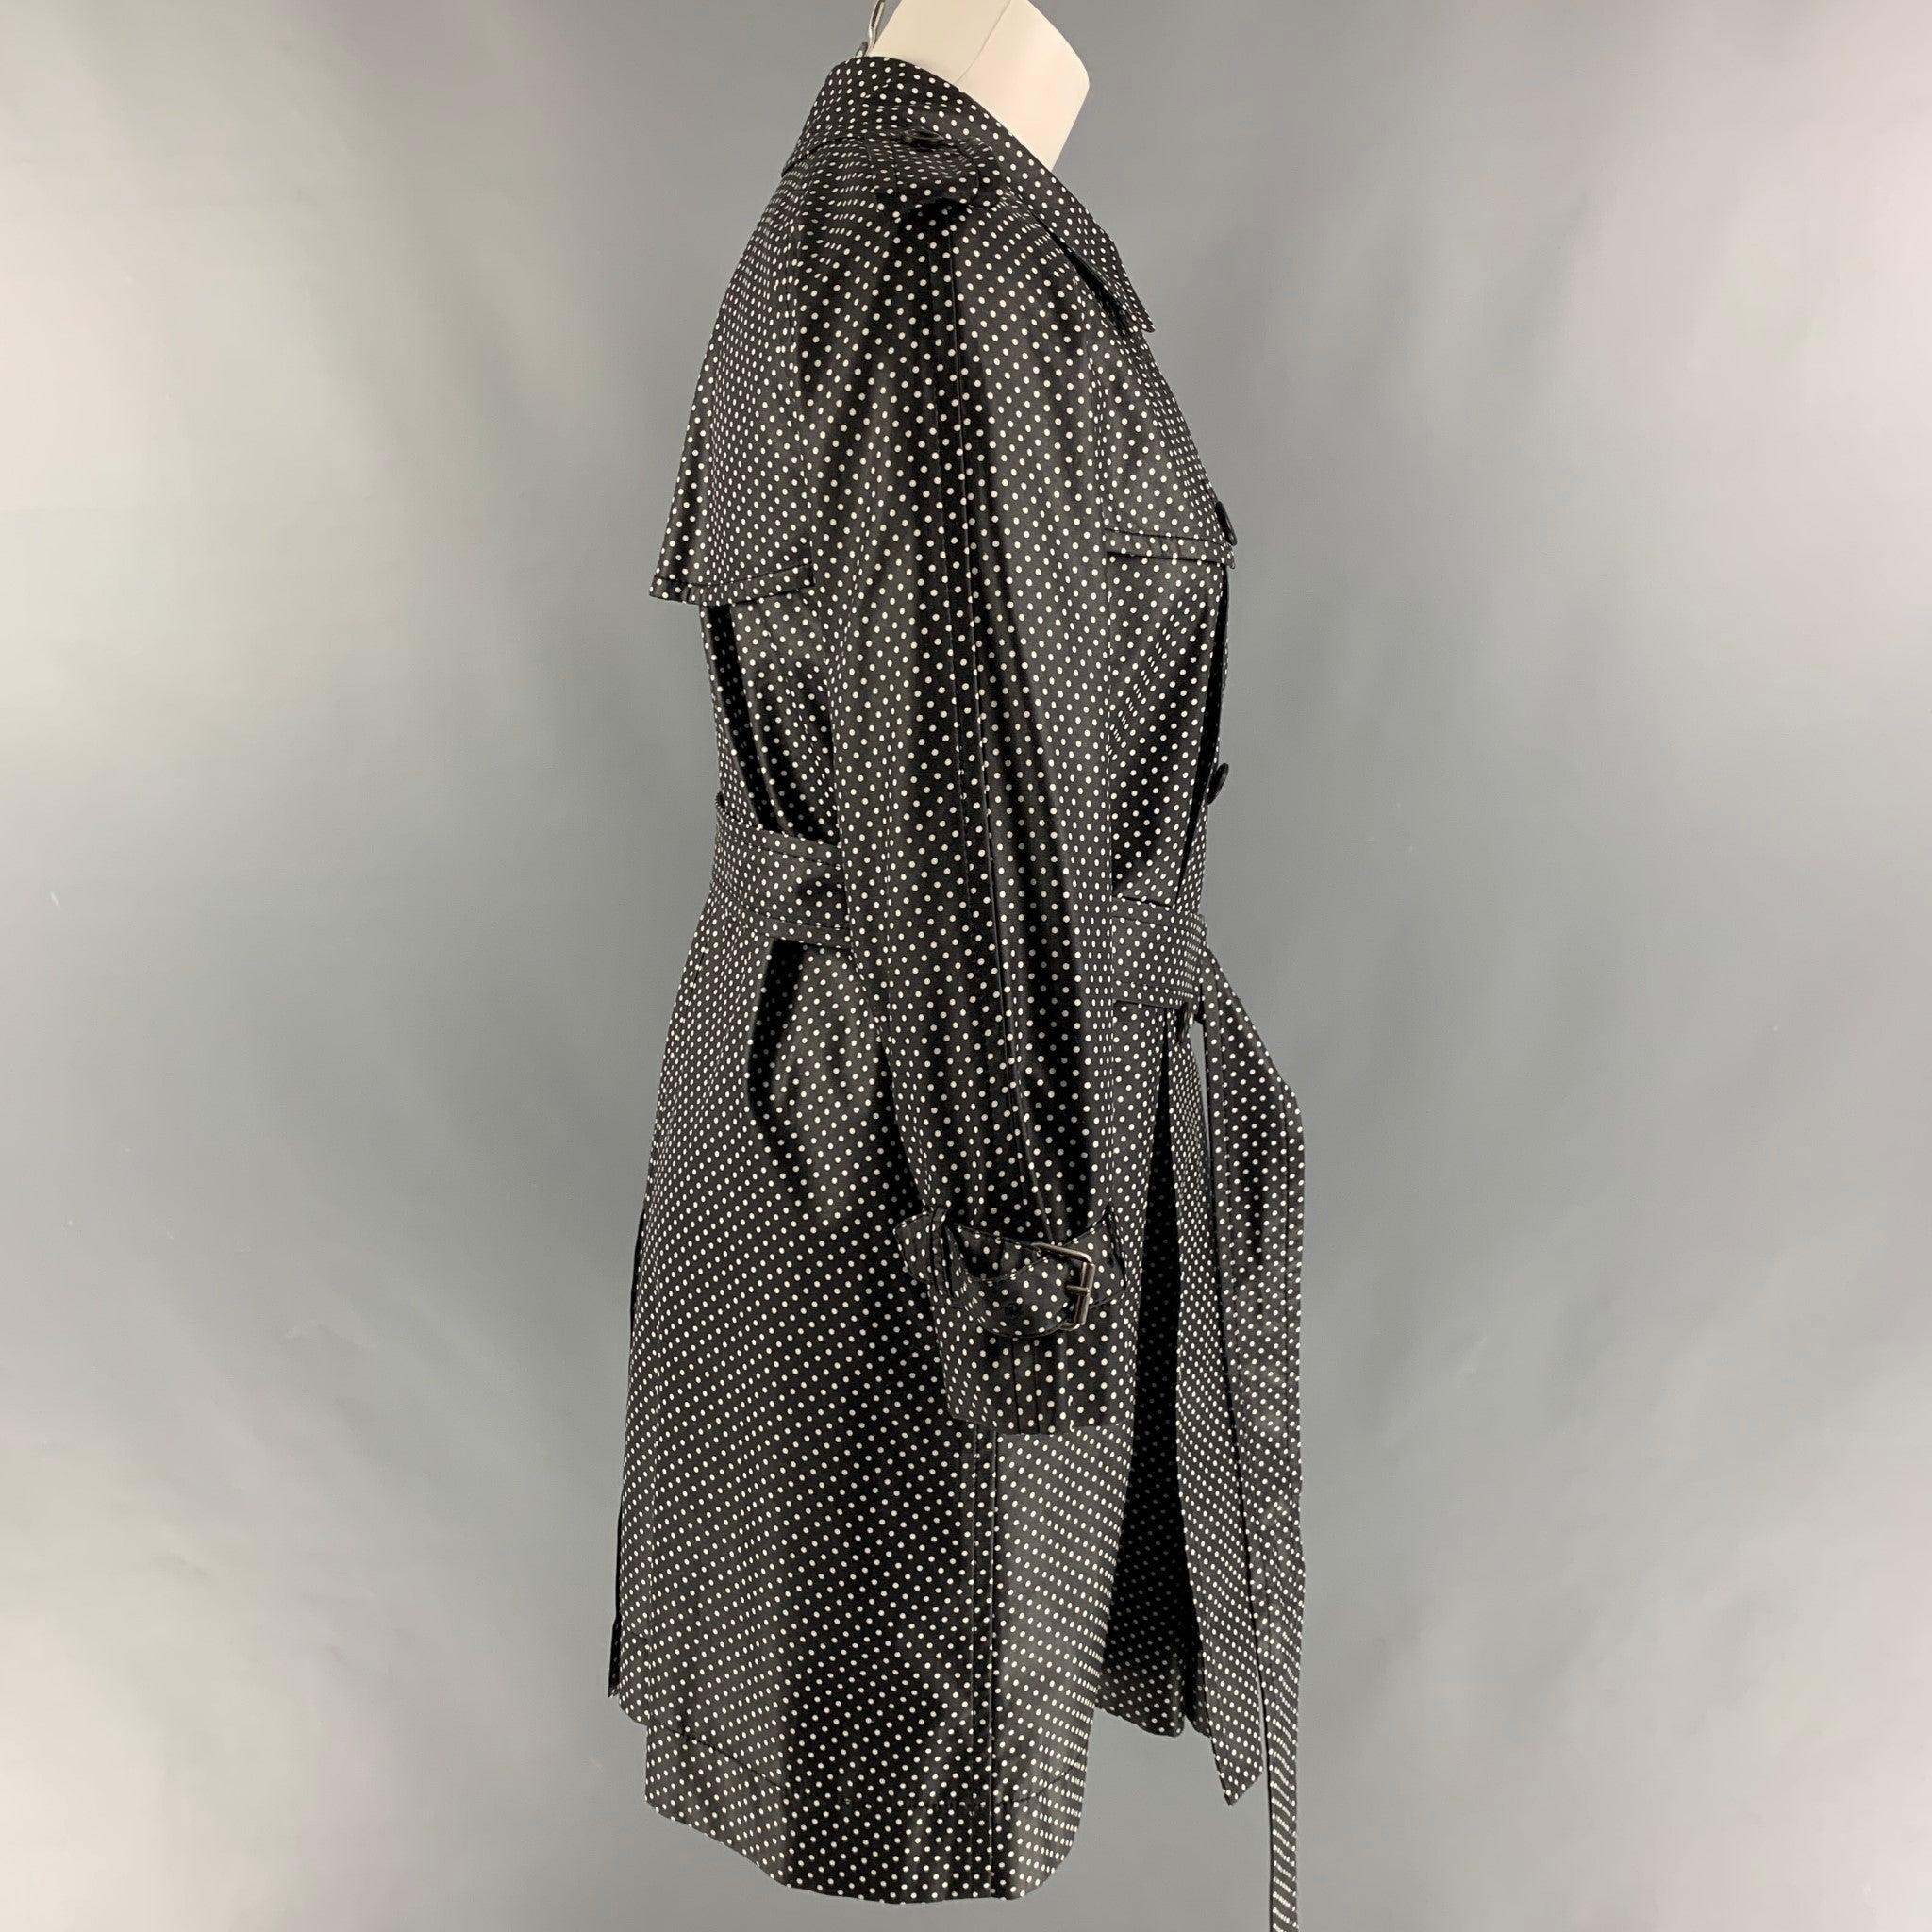 Le trench-coat MARC JACOBS est en soie à pois noirs et blancs, avec une doublure complète, un style ceinturé, une seule fente au dos, des épaulettes, une fermeture à crochet au col, des poches sur le devant et une fermeture à double boutonnage.